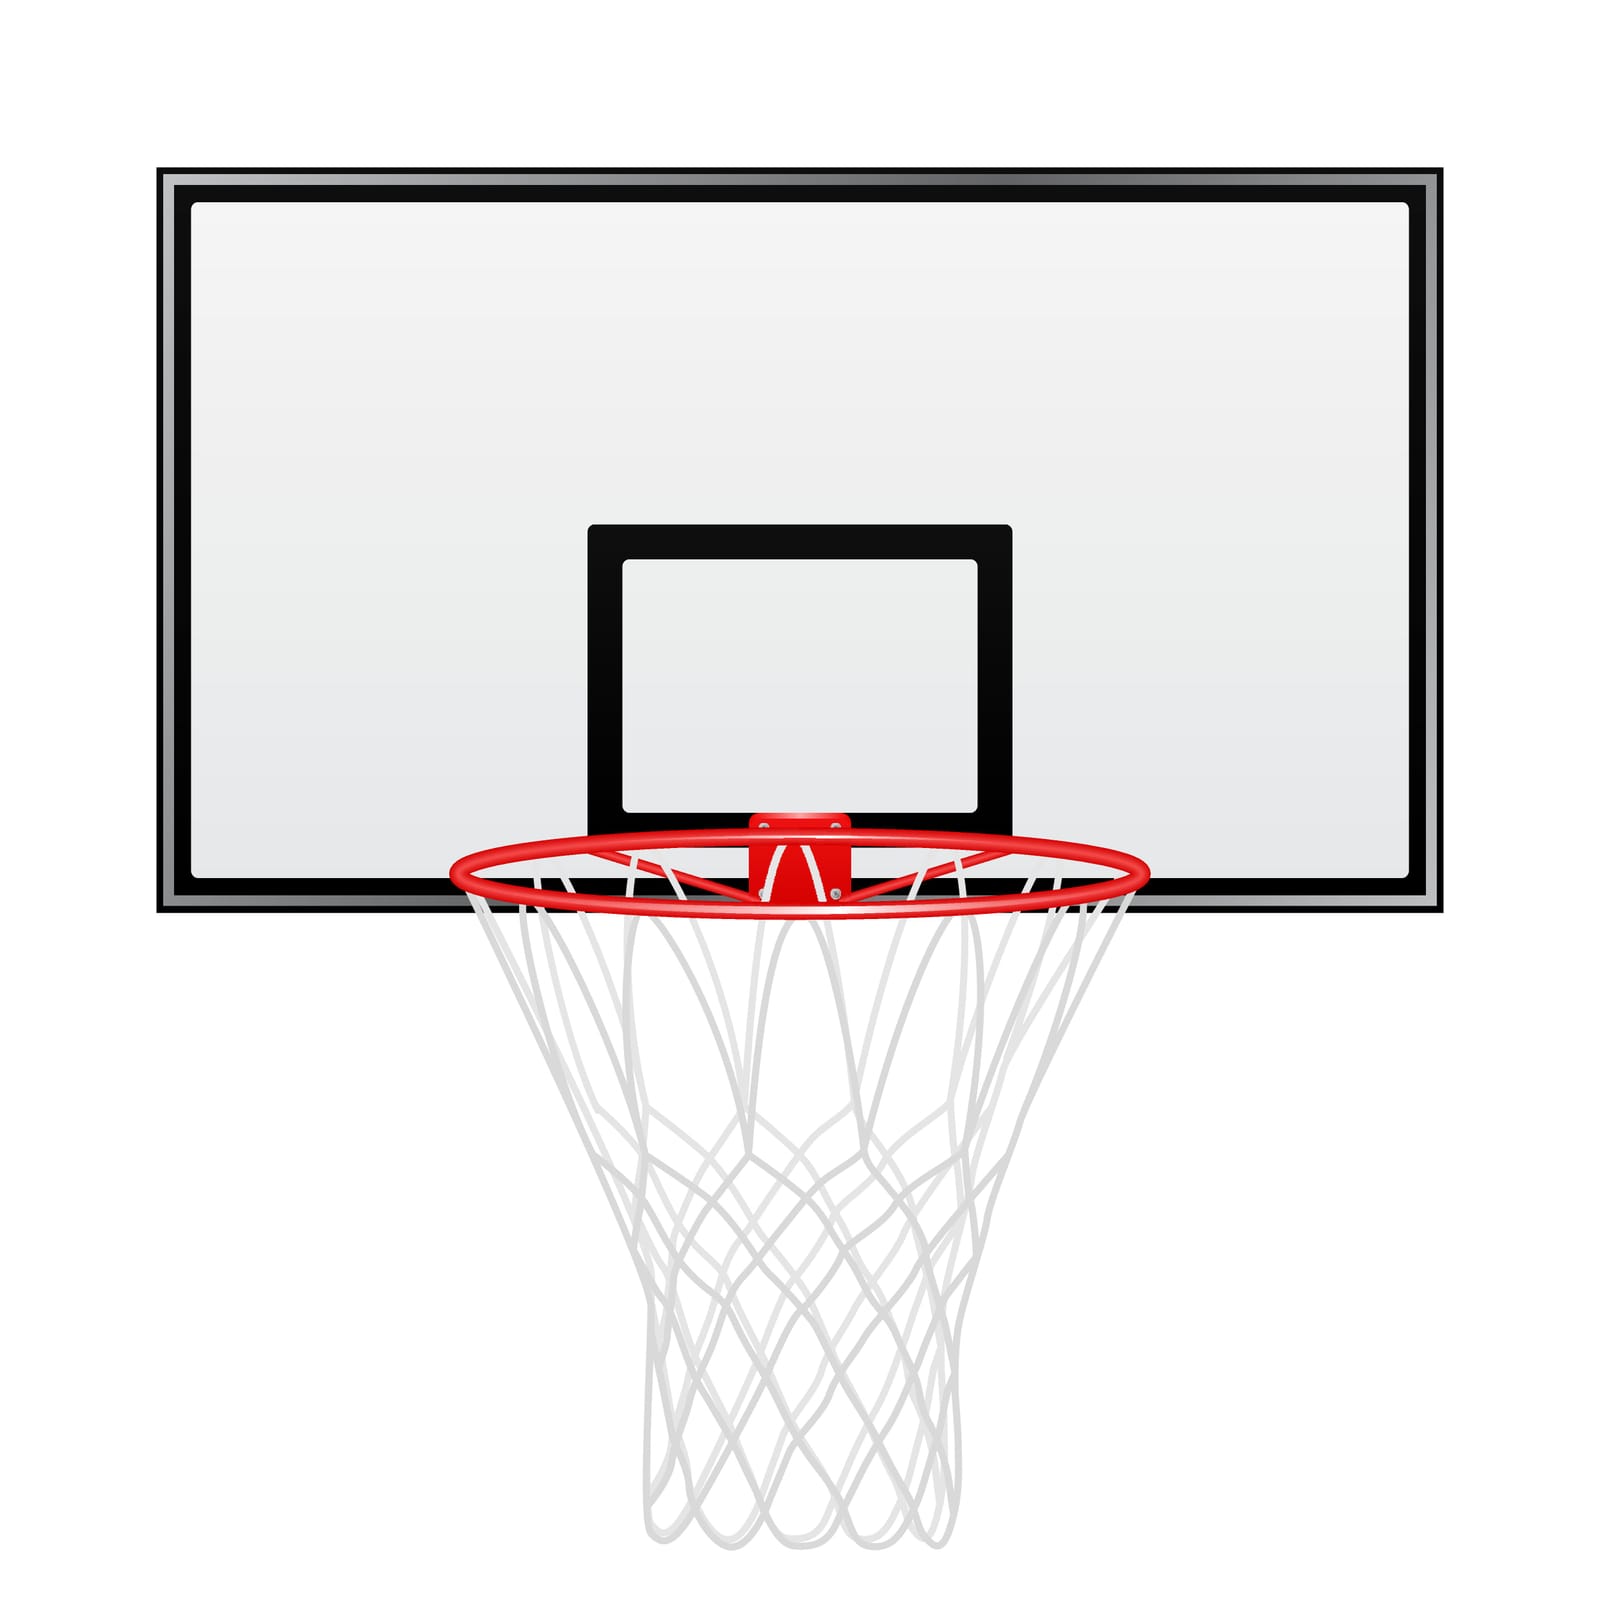 Wall mounted basketball hoop